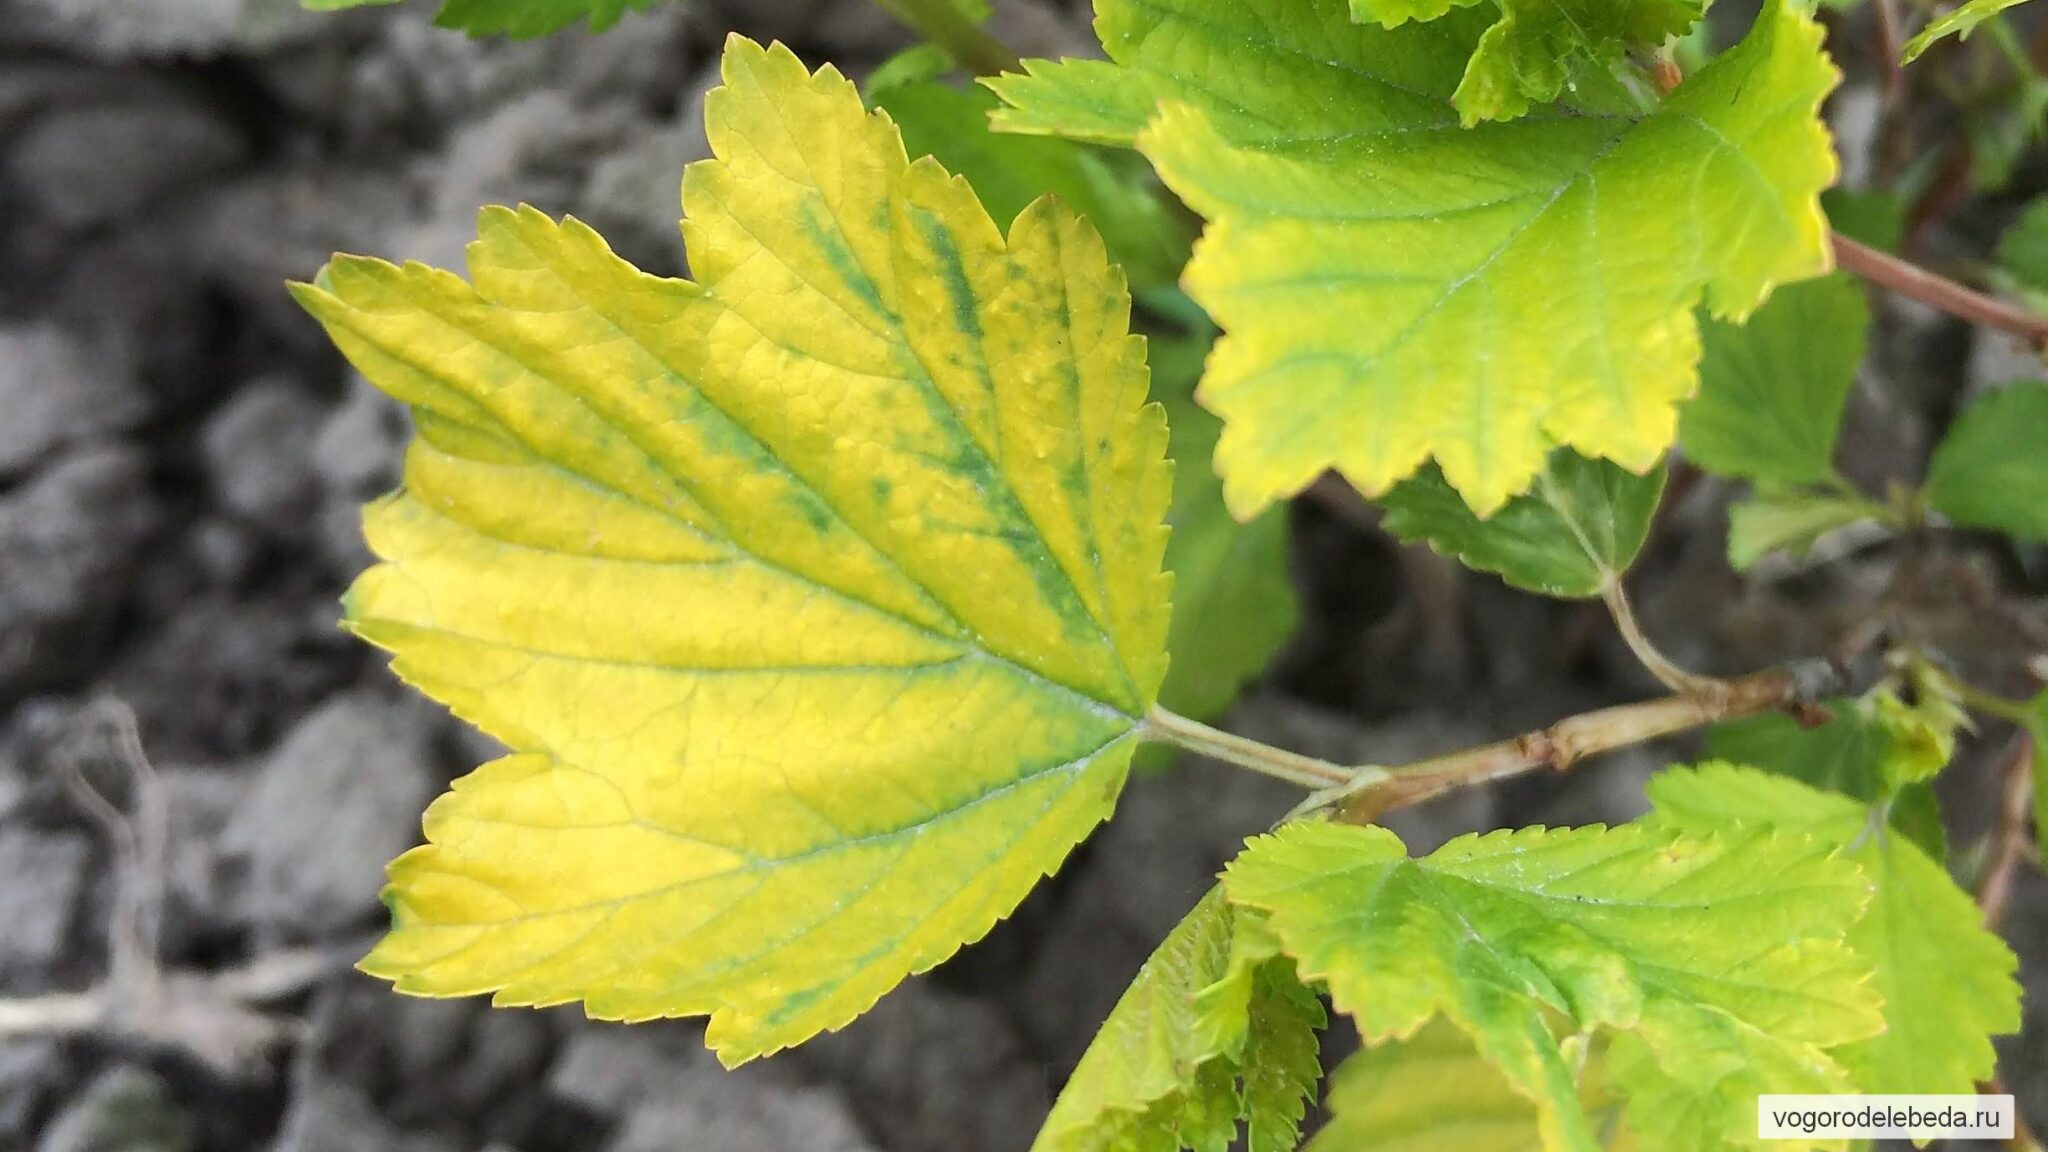 Причины появления желтого листа у растения